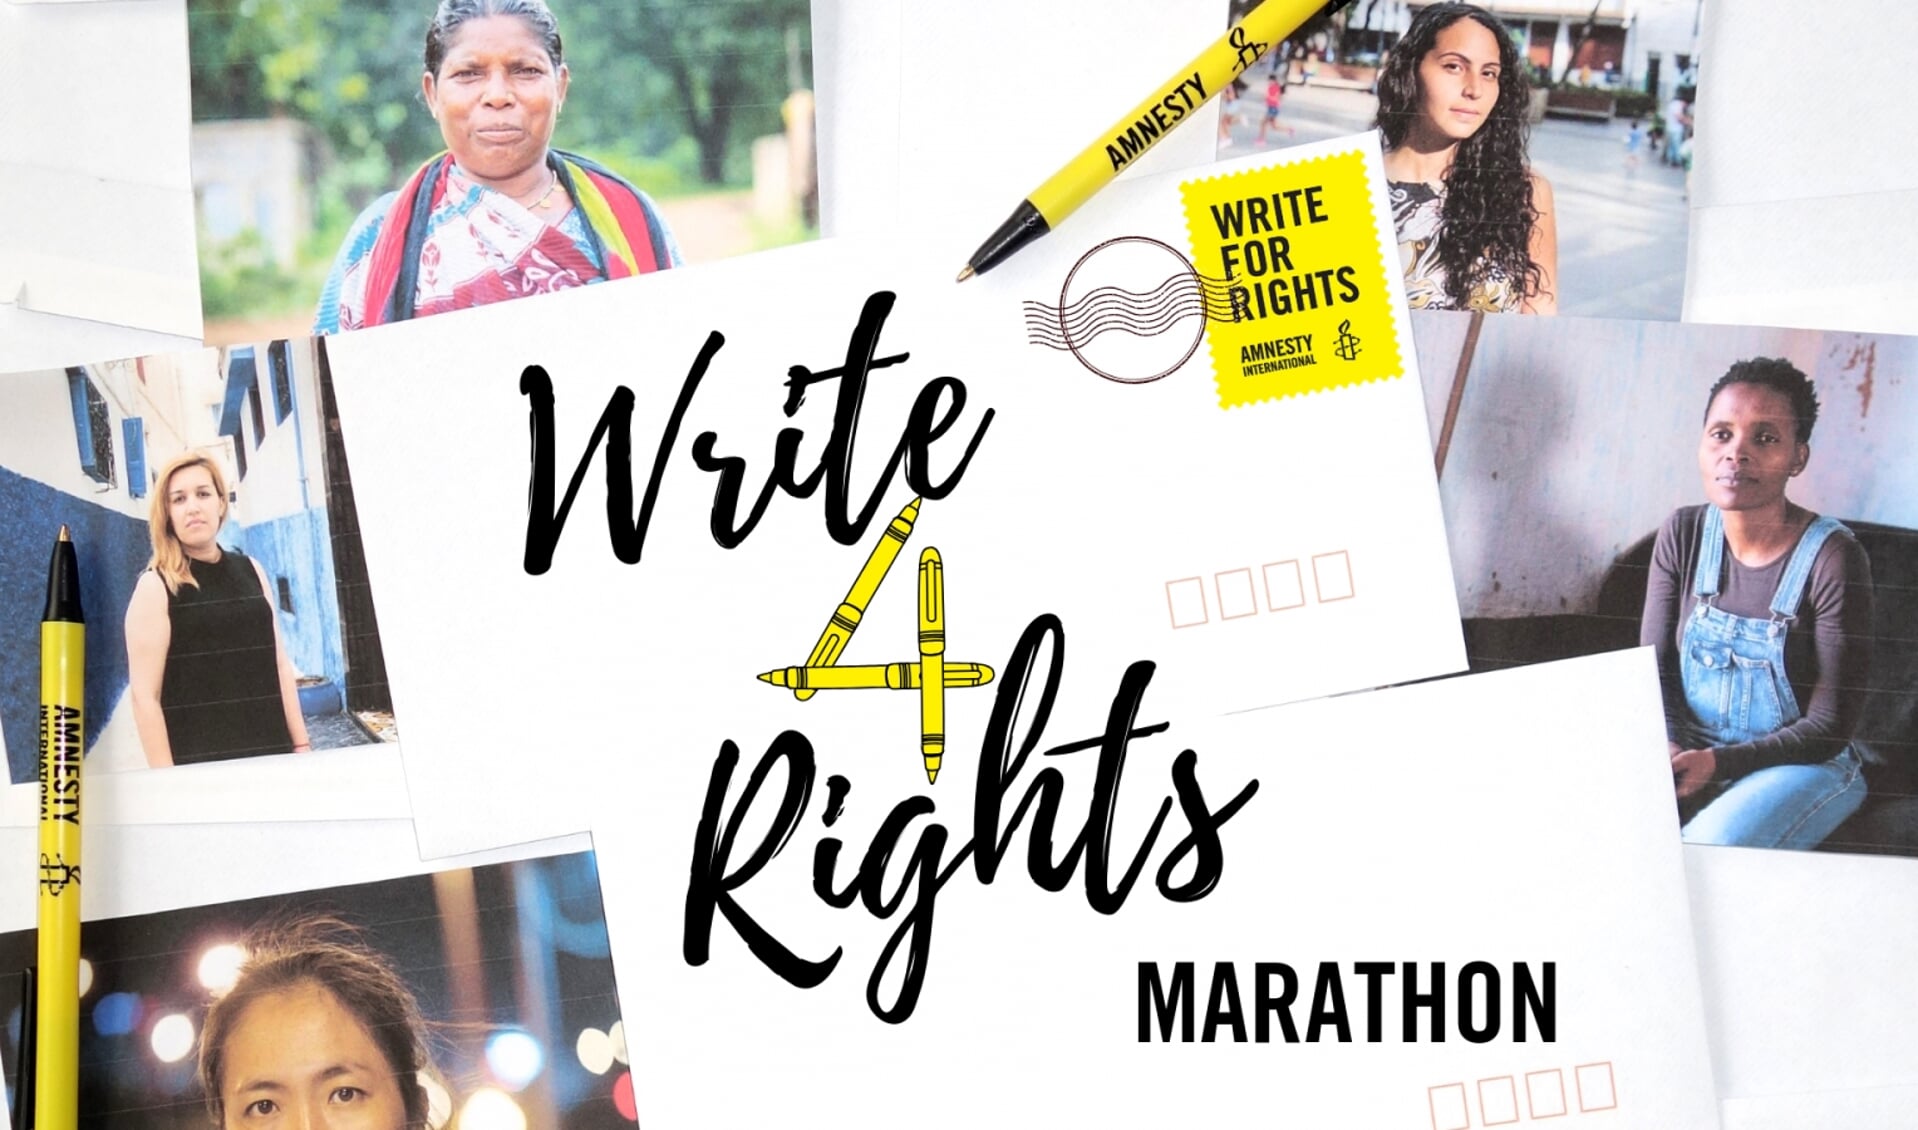 Maandag 10 december houdt Amnesty een schrijfmarathon 